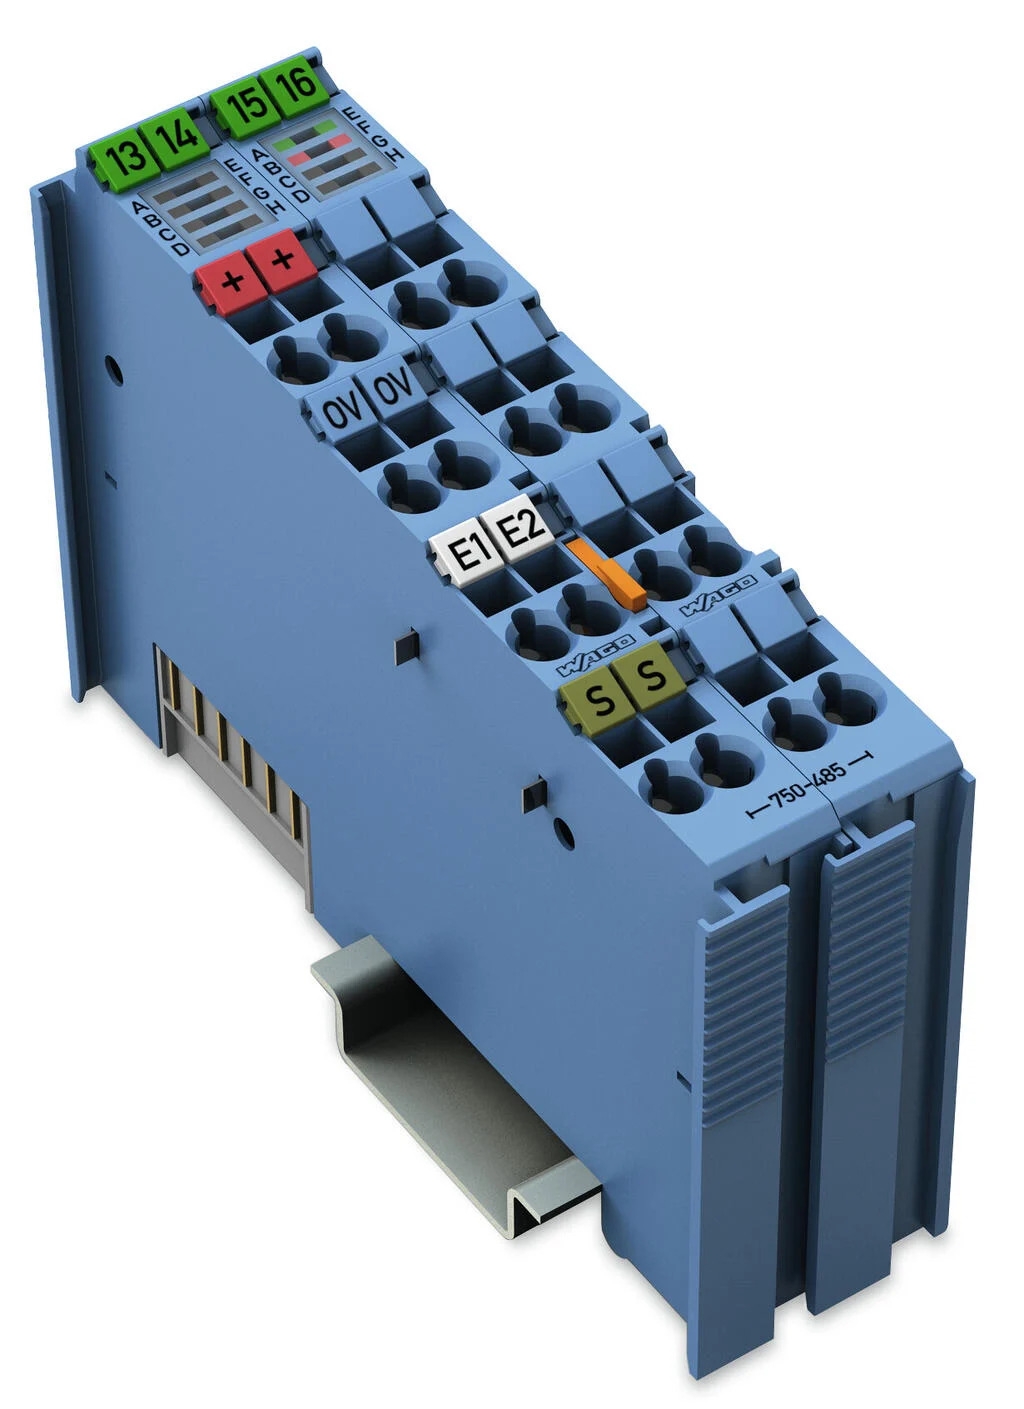 WAGO 750-485 модуль искробезопасного исполнения